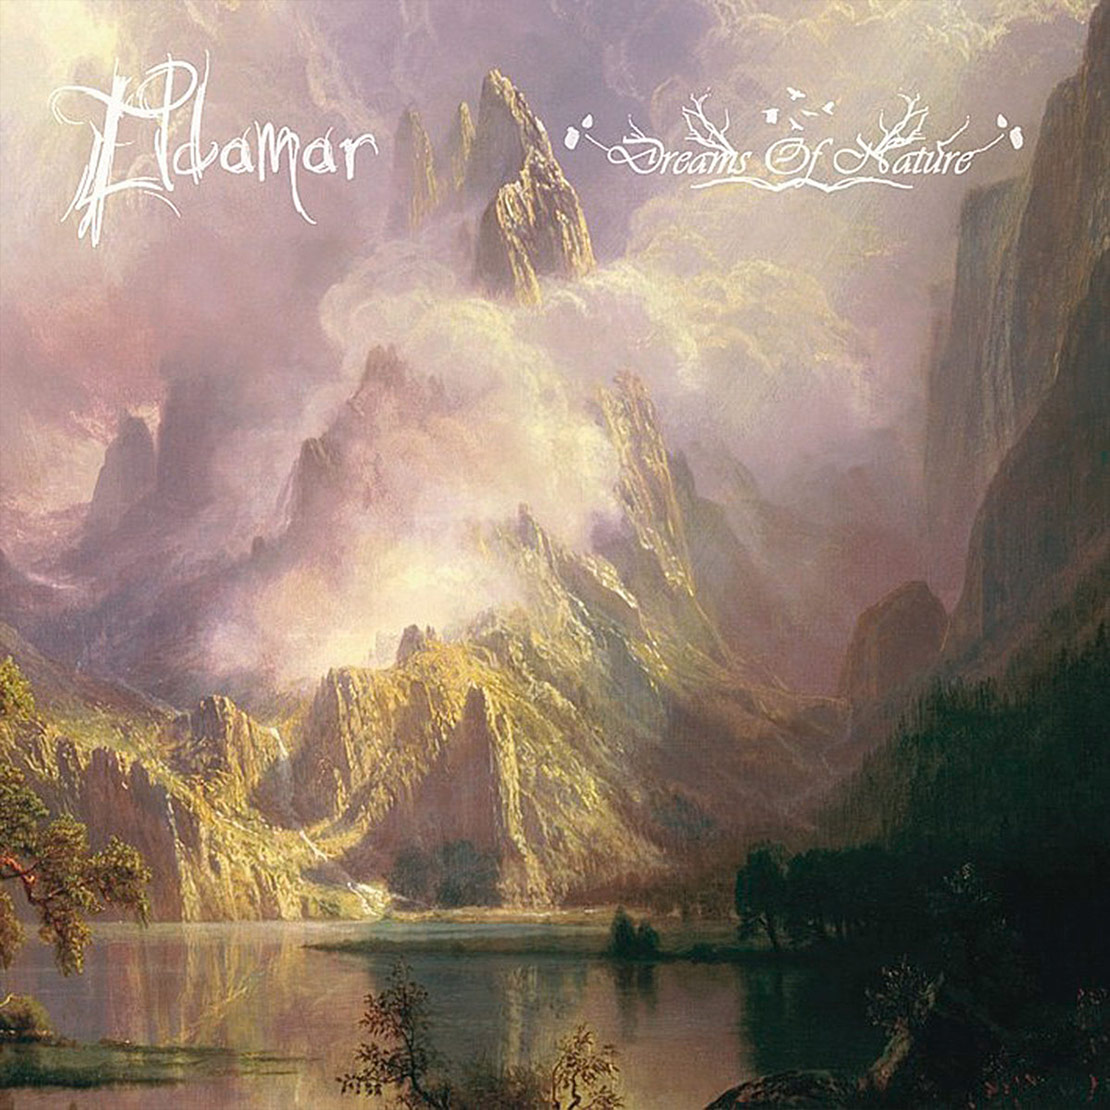 Eldamar - Eldamar / Dreams of Nature